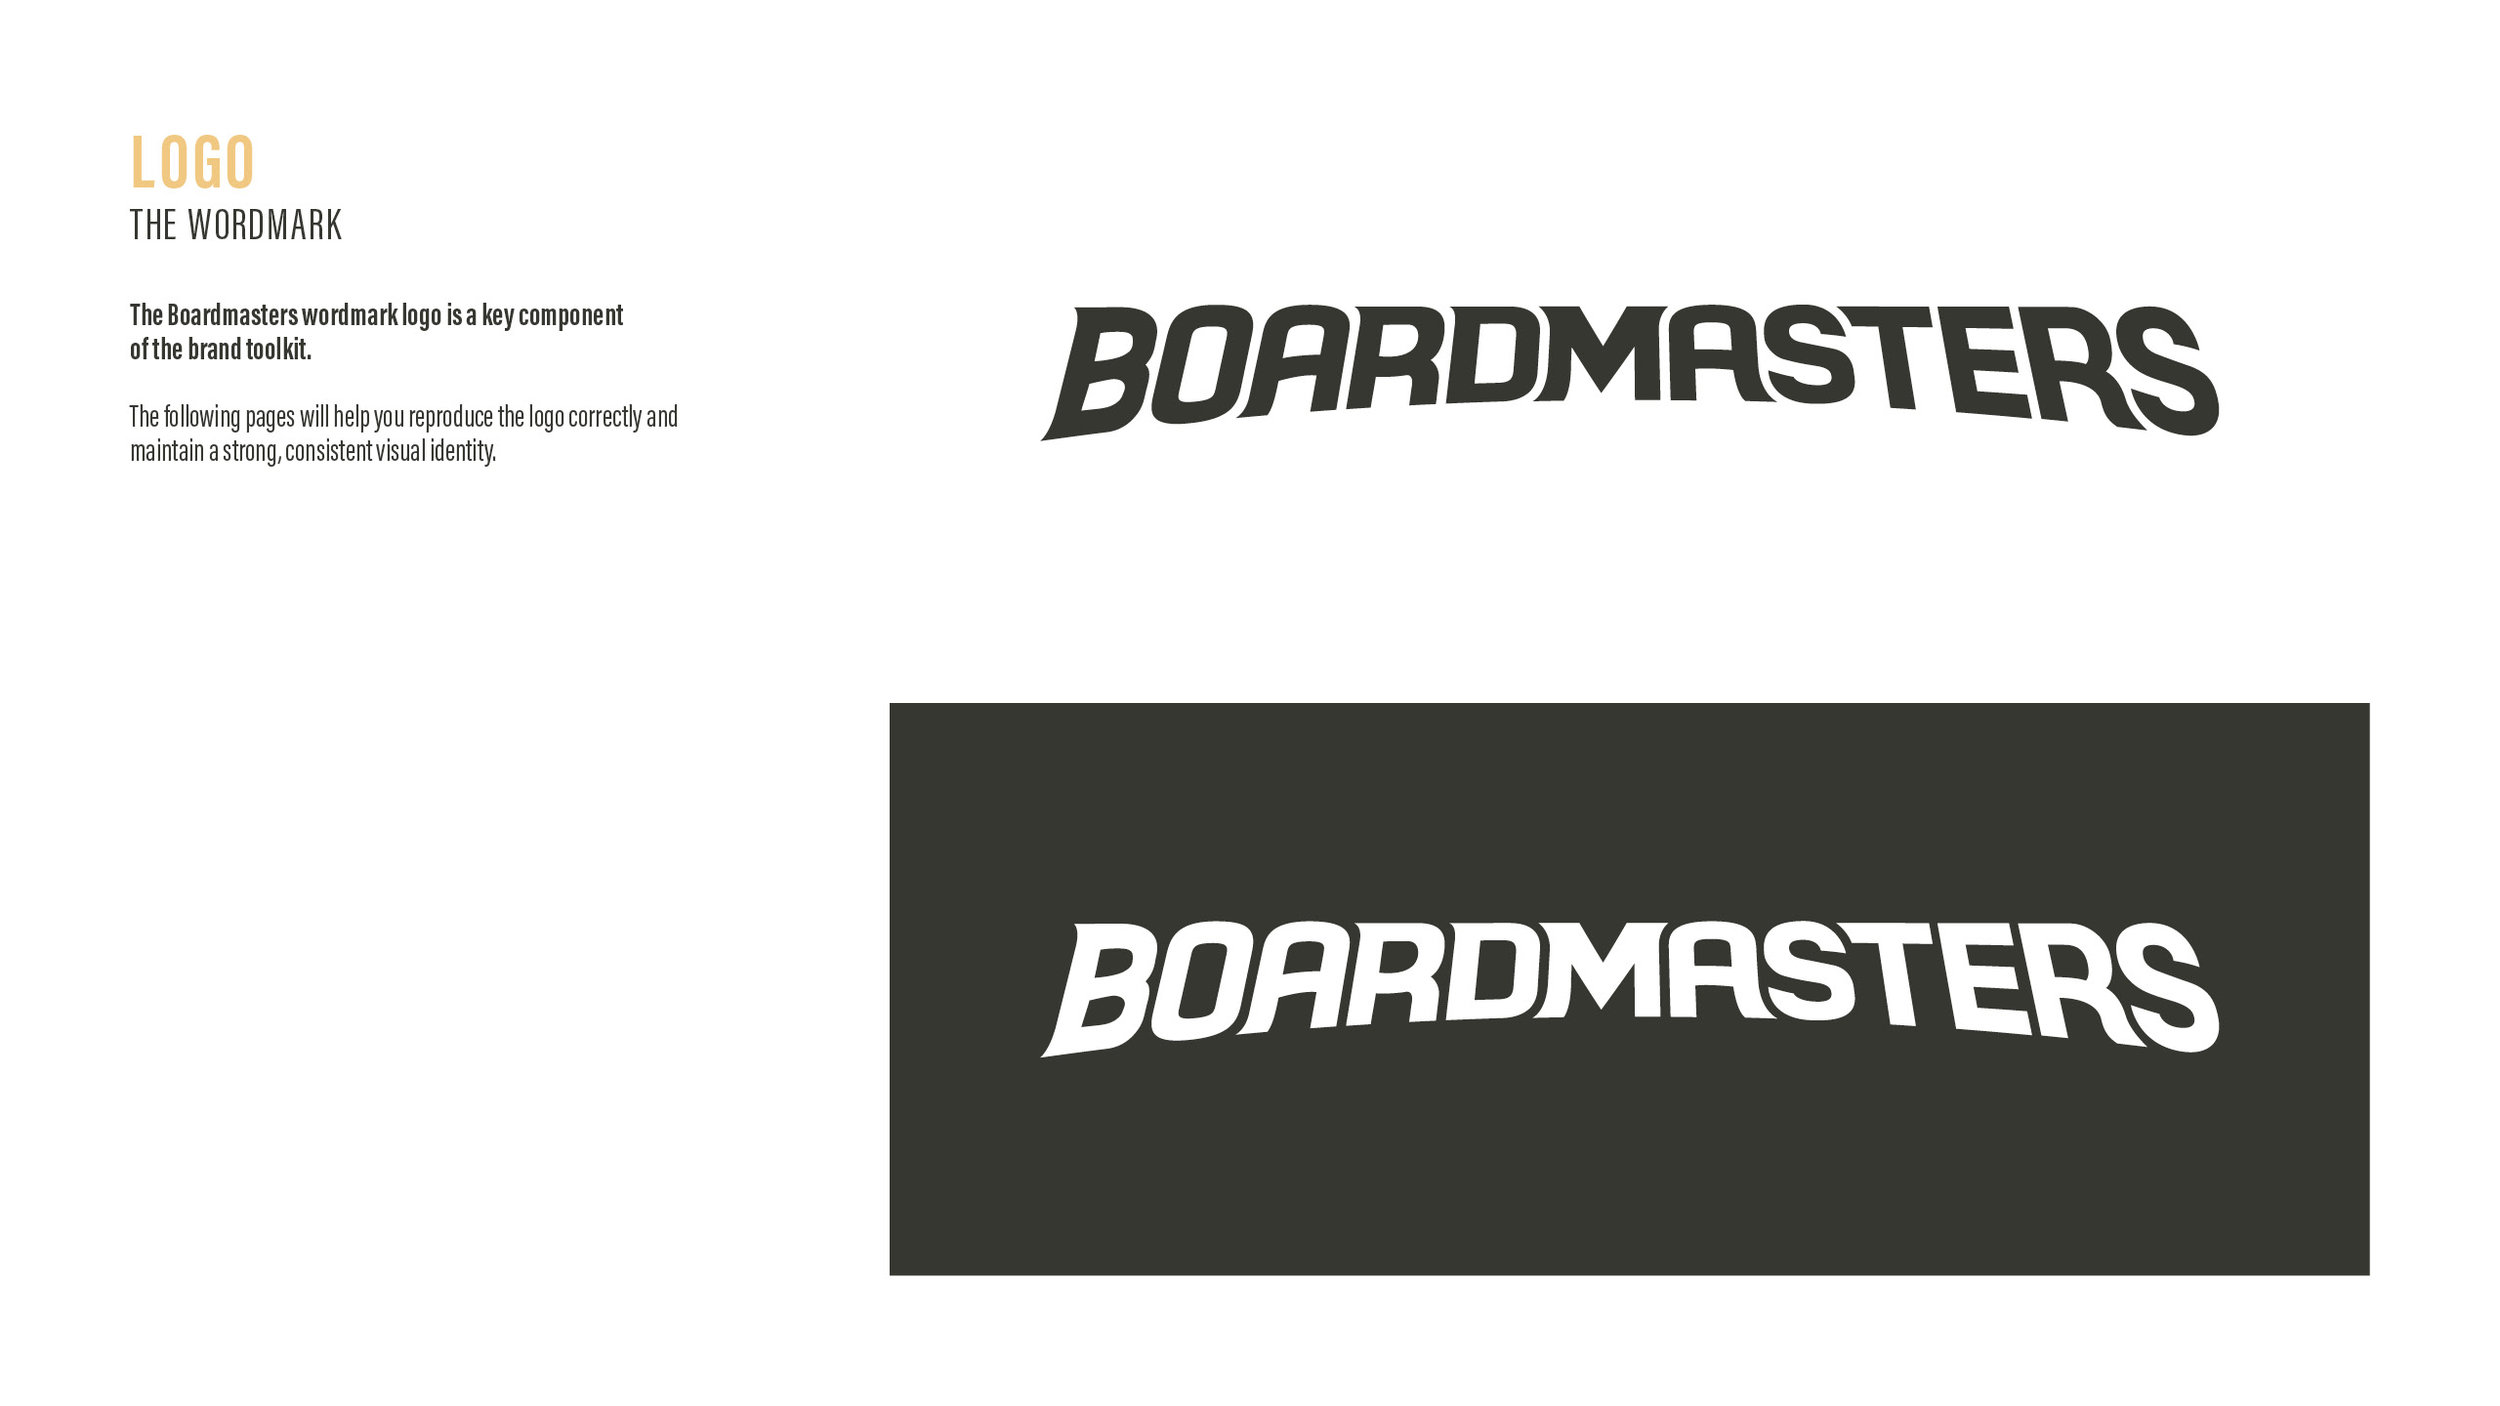 Boardmasters_2017_Style Guide_16Feb174.jpg